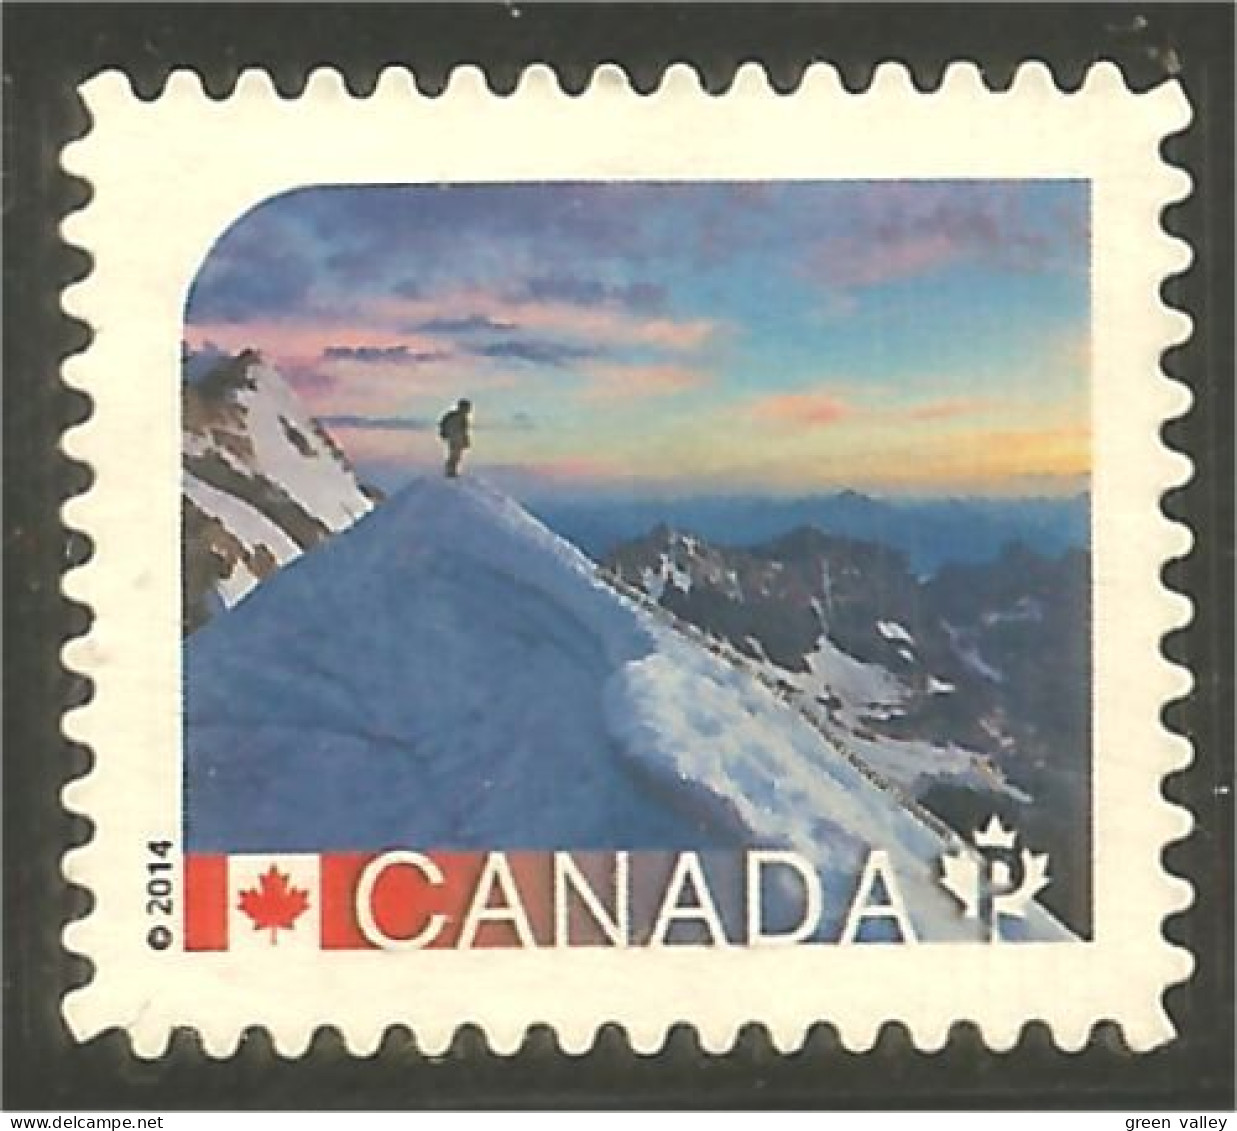 Canada Alpinisme Montagne Escalade Mountain Climbing Mint No Gum (309b) - Escalade